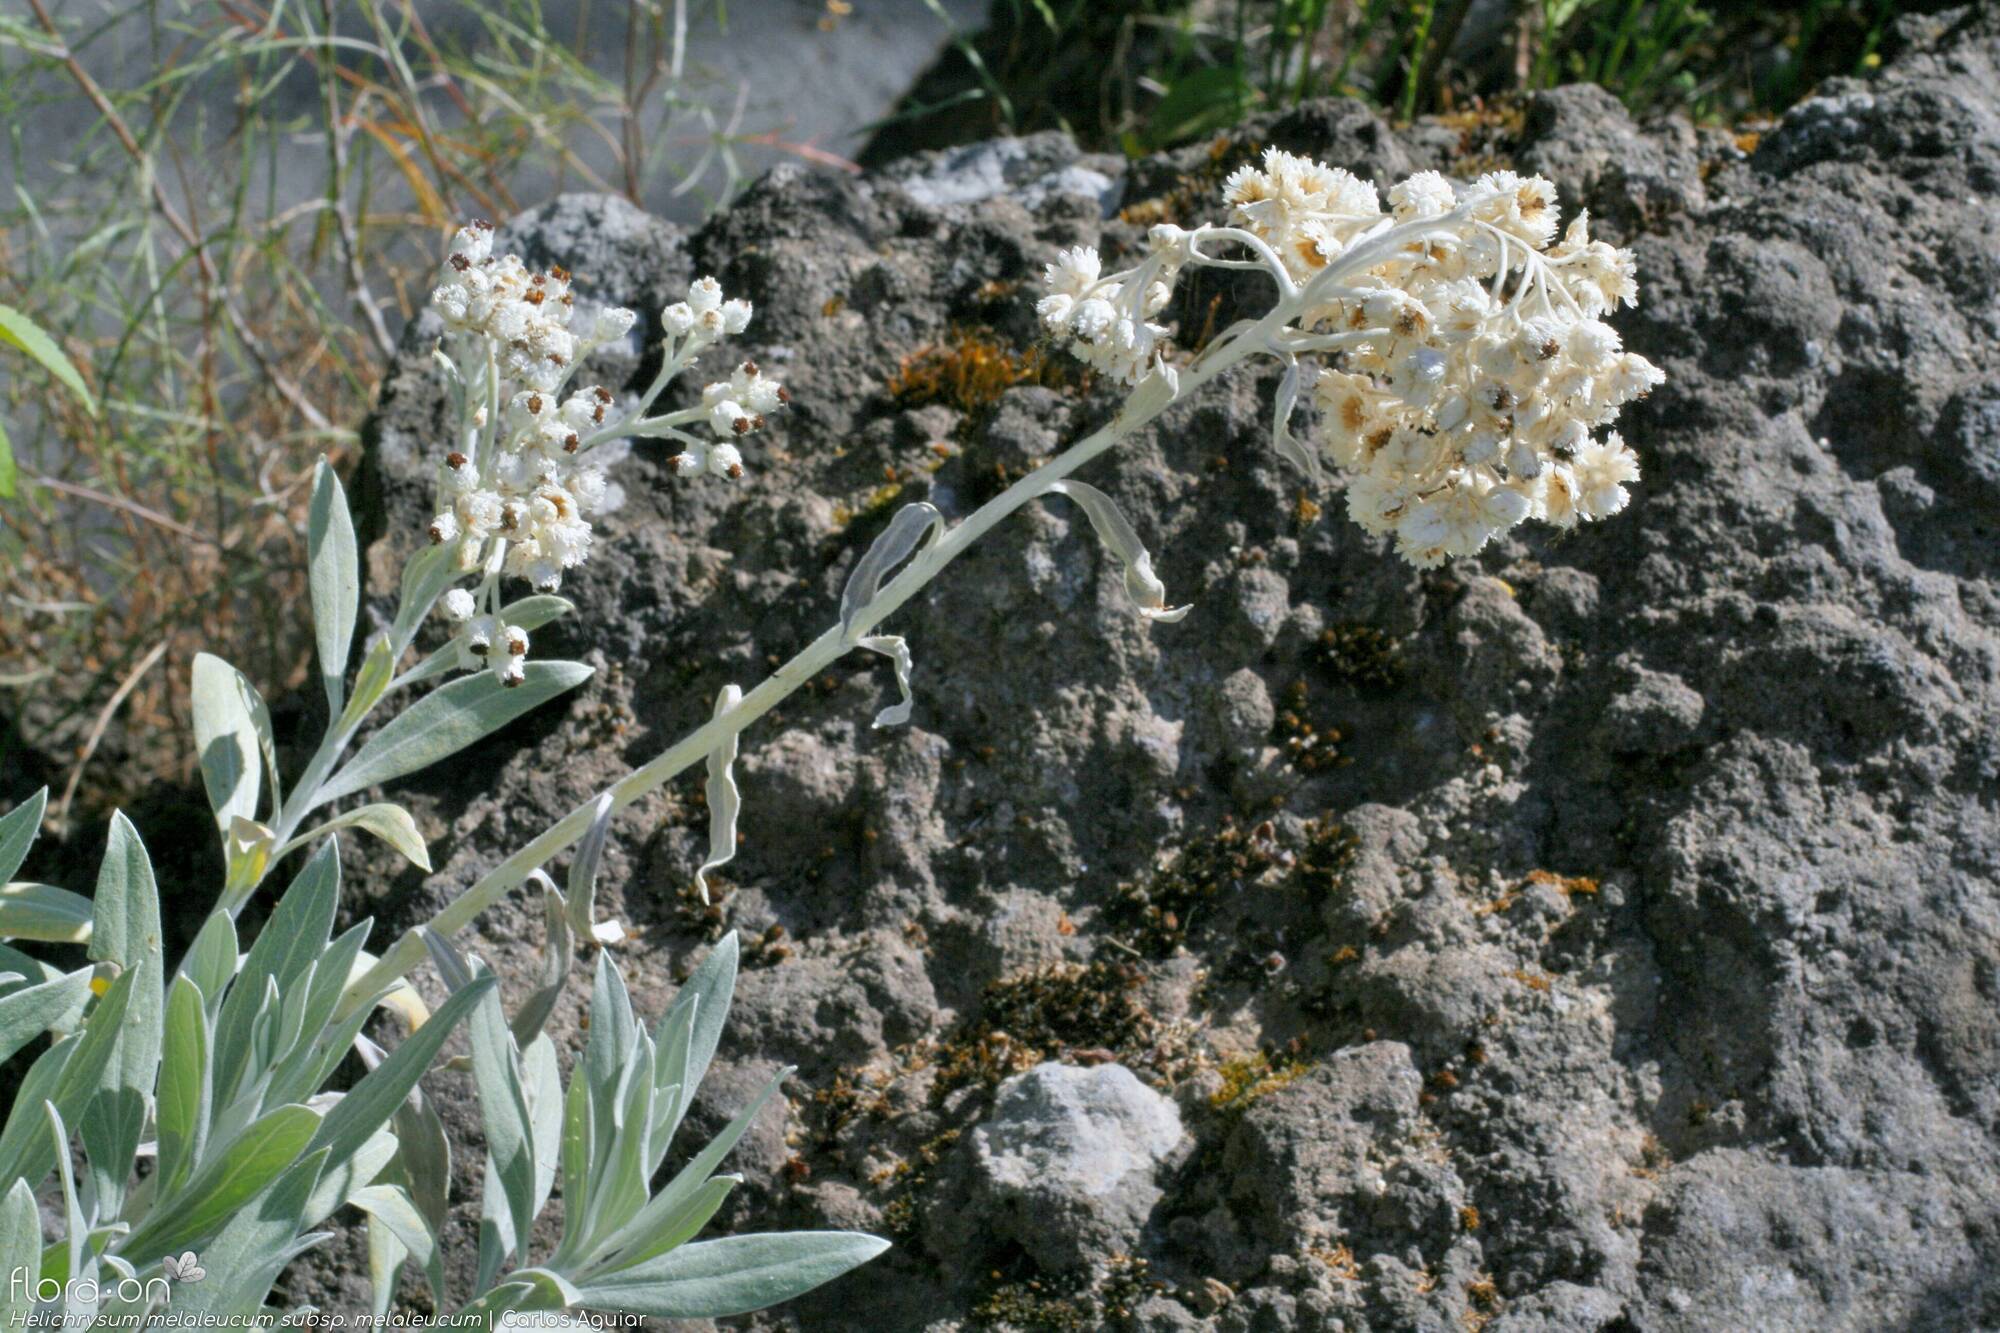 Helichrysum melaleucum - Flor (geral) | Carlos Aguiar; CC BY-NC 4.0